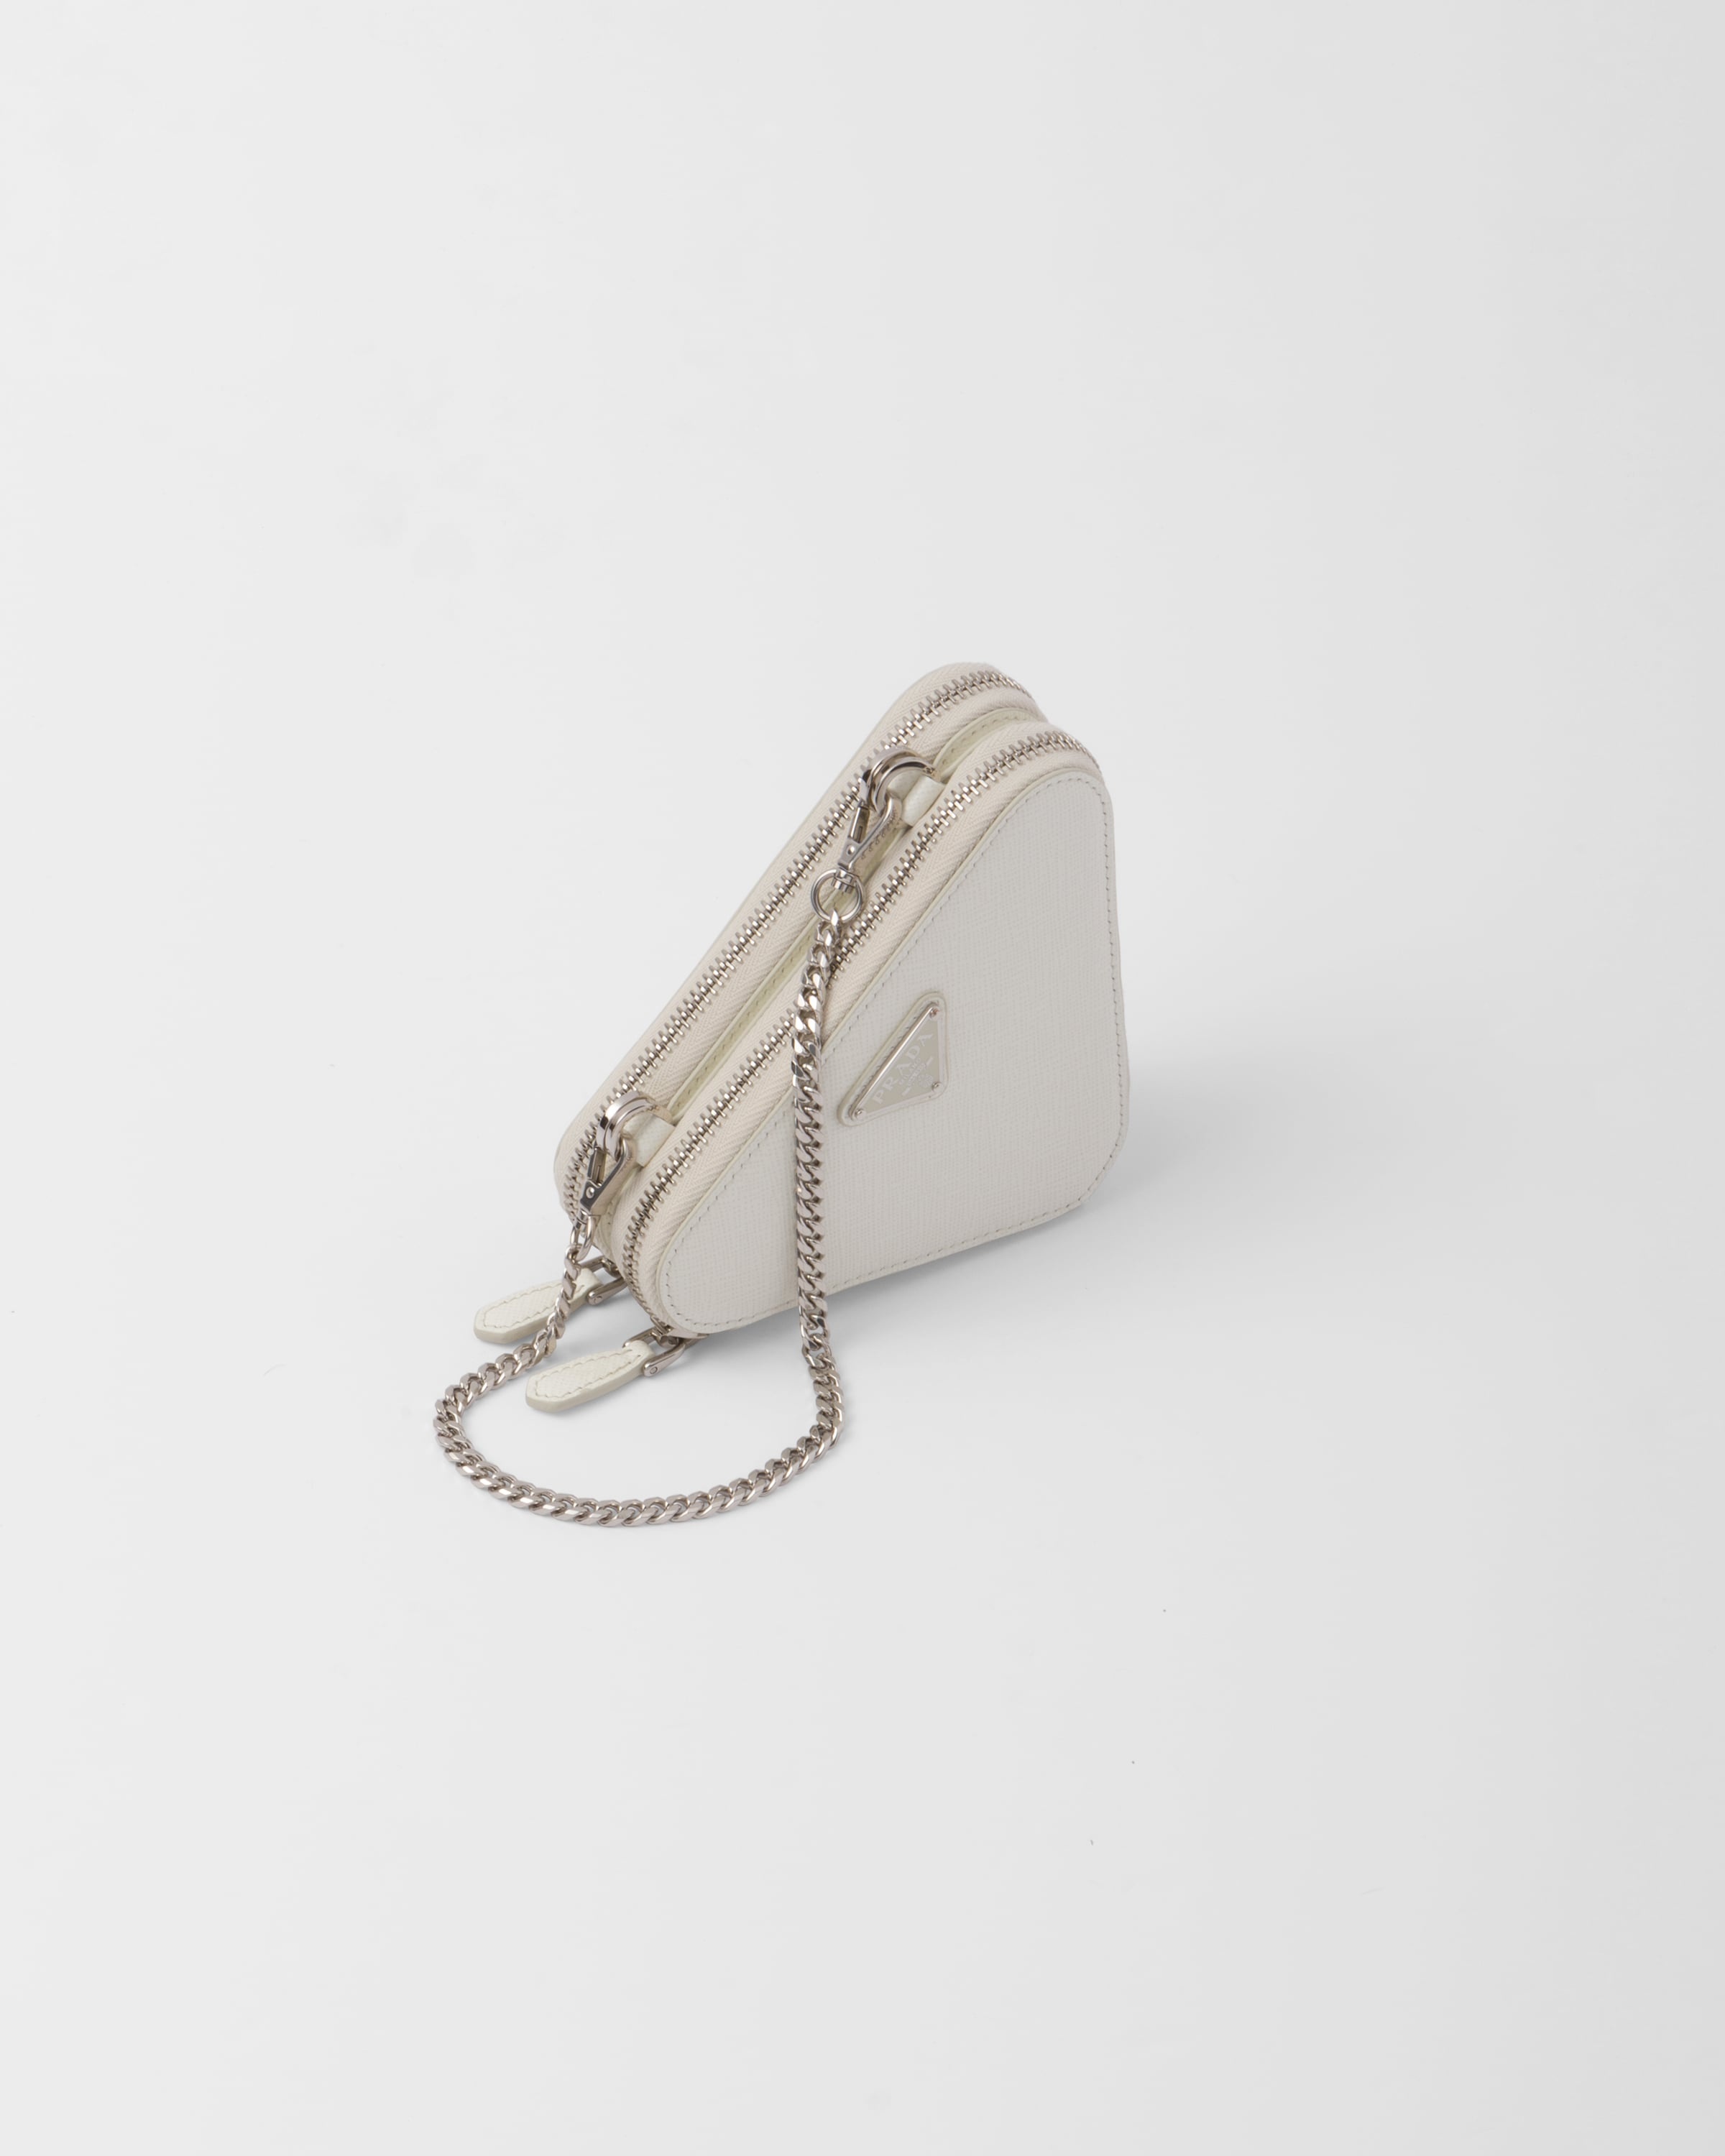 Saffiano leather mini pouch